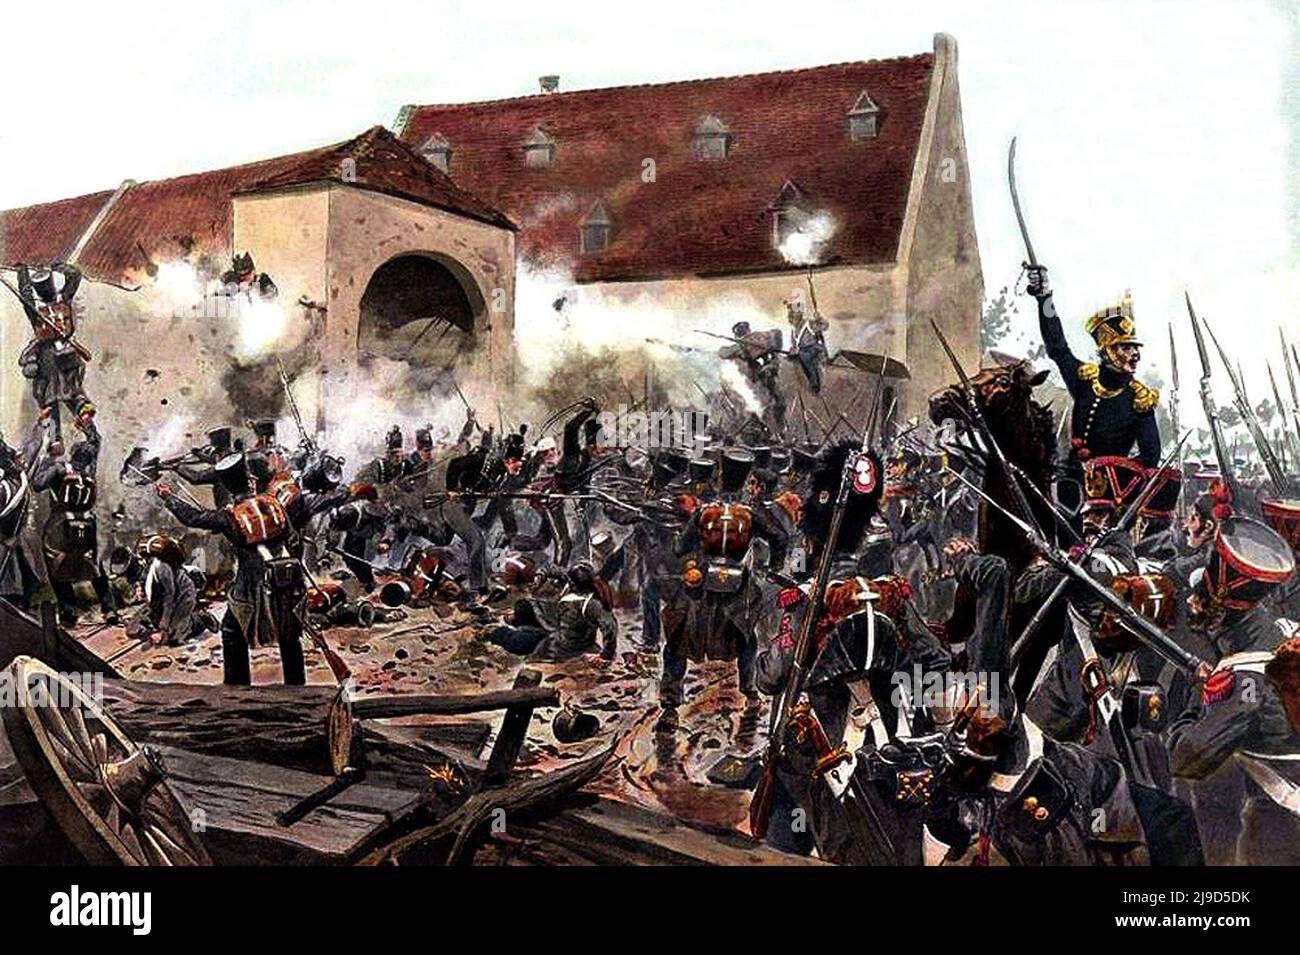 El asalto de La Haye Sainte A la Batalla de Waterloo en 1815. La imagen muestra el francés asaltando la granja. Pintura del artista Richard Knotel, imagen de dominio público en virtud de la edad. Foto de stock